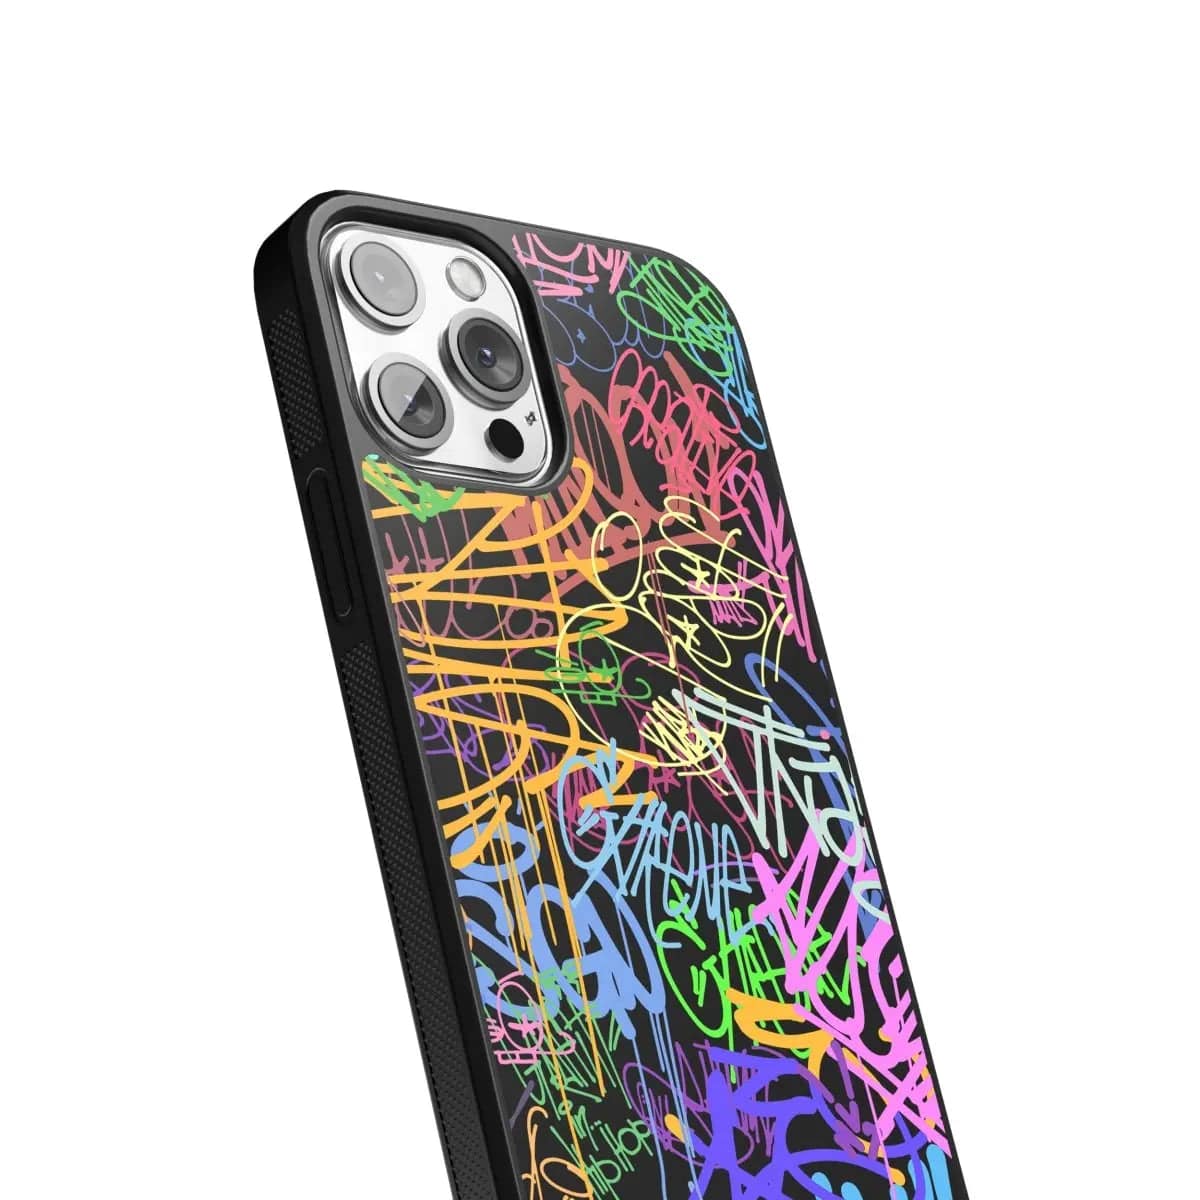 Phone case "Multicolour graffiti 1" - Artcase